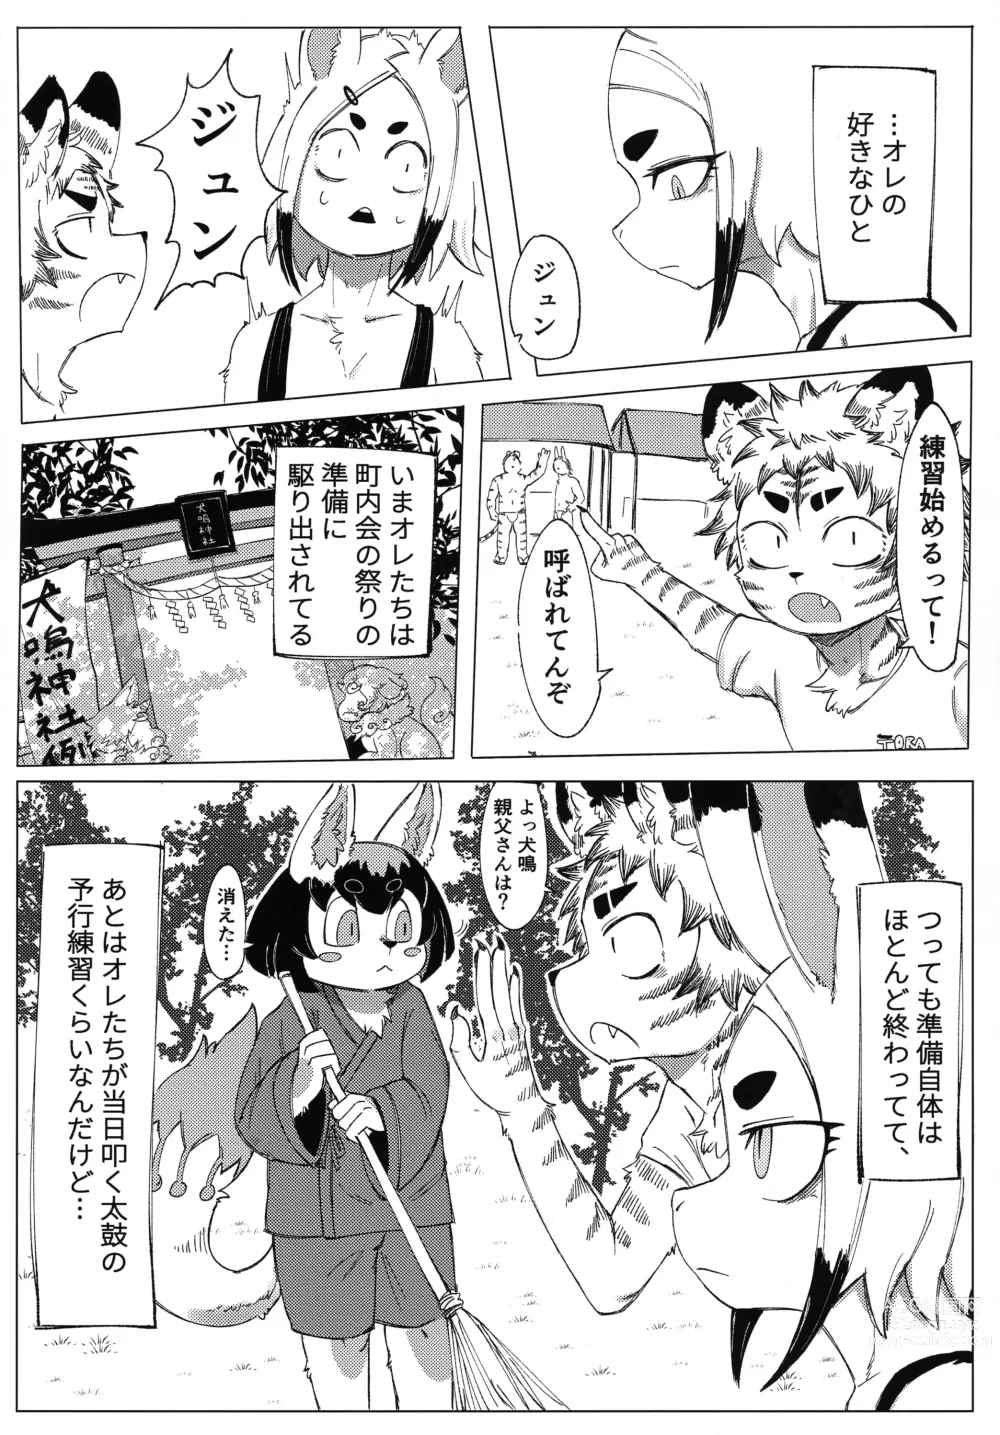 Page 6 of doujinshi Matsuri no Zenjitsu